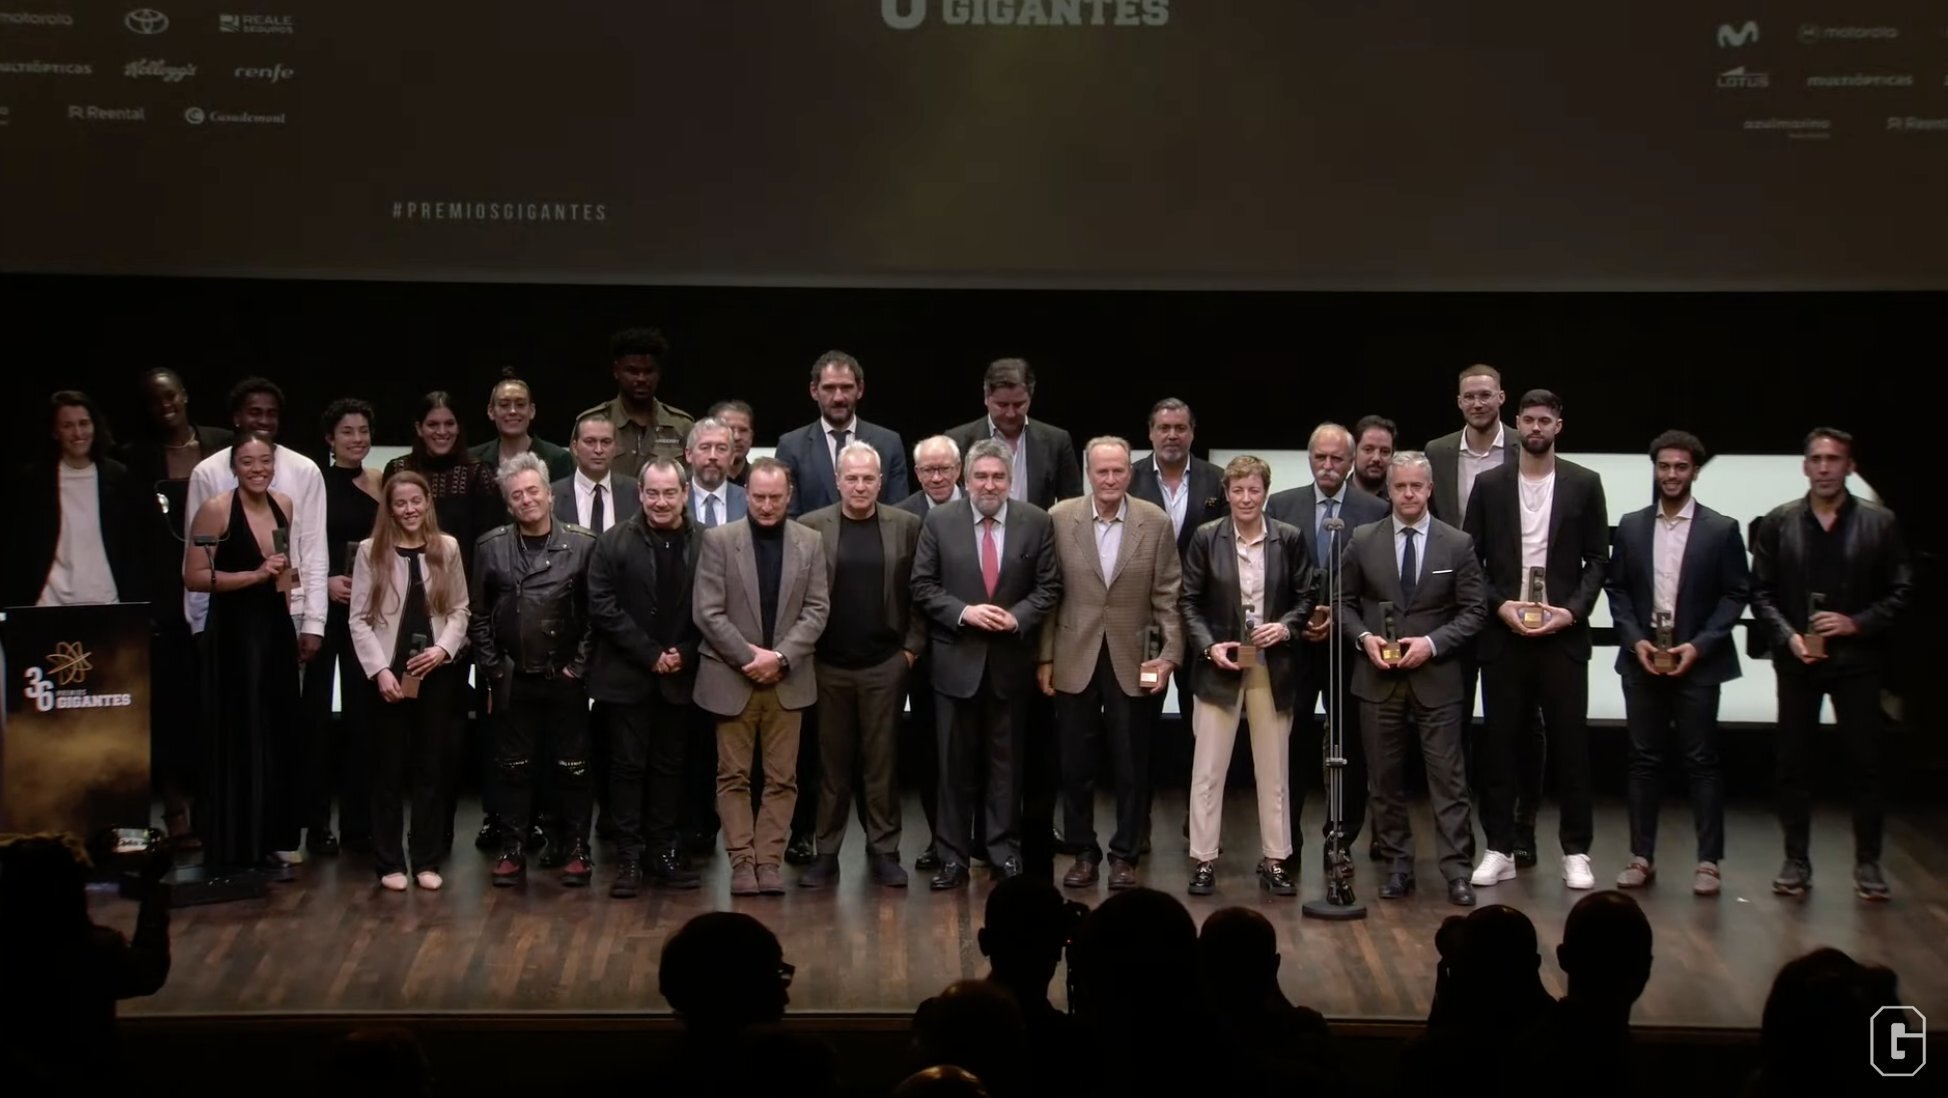 Movistar Estudiantes recibió el Premio Gigantes por el 75 aniversario